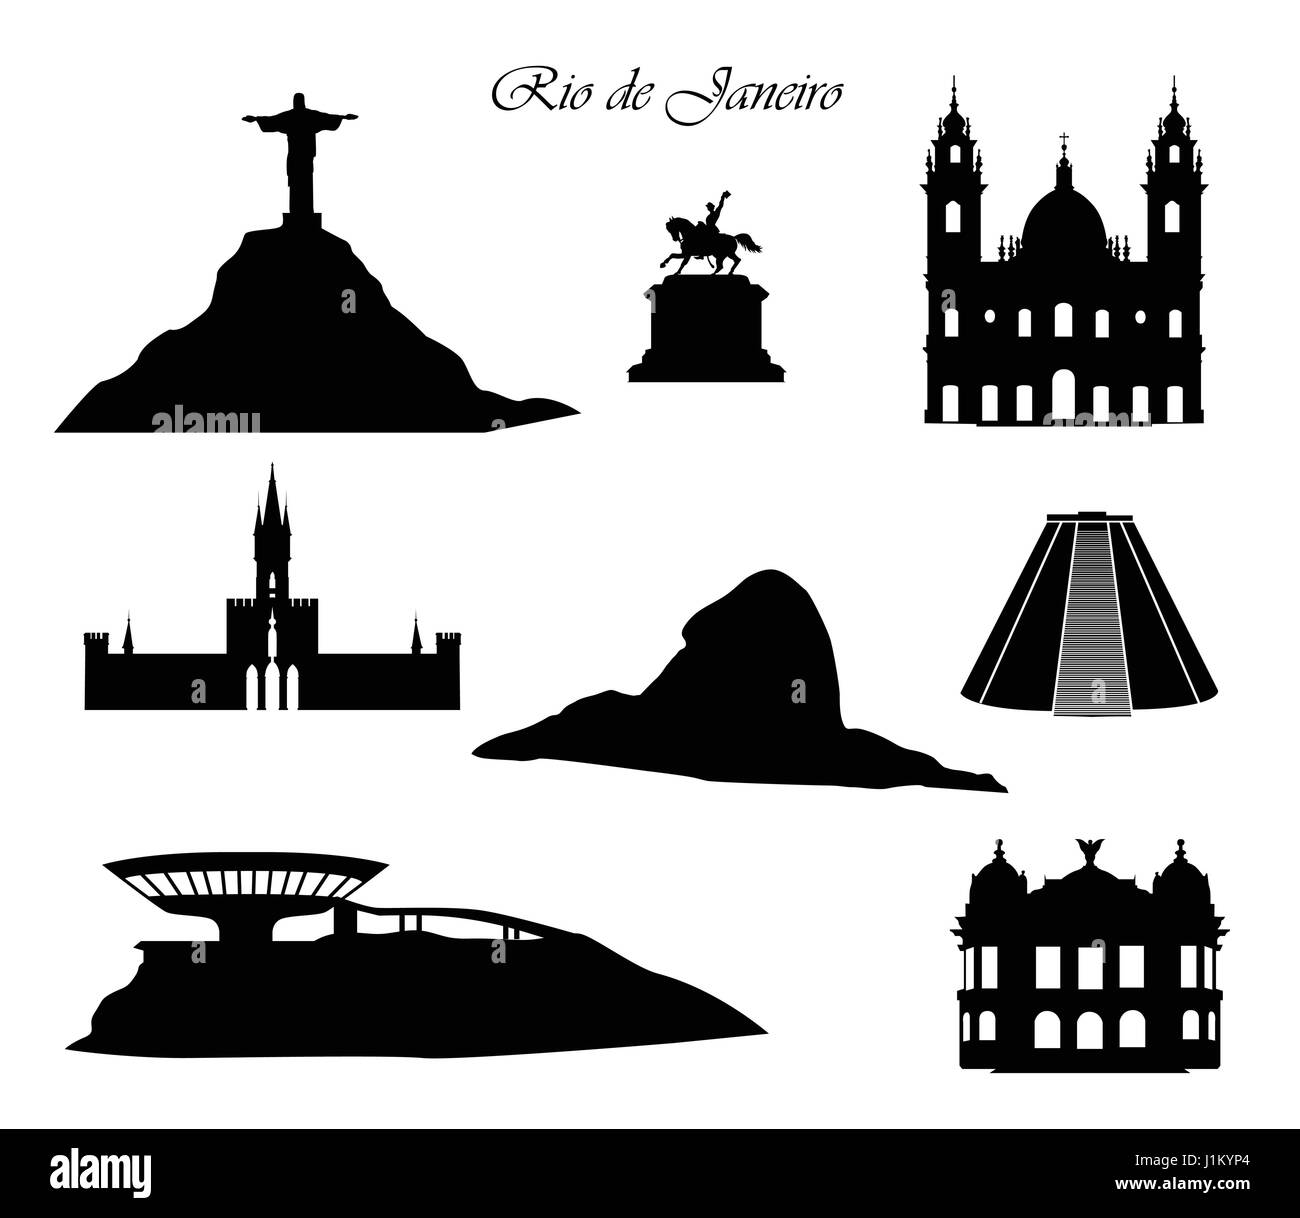 Rio de Janeiro ville signes. landmarks fixés. cityscape silhouette avec les immeubles et les montagnes. Illustration de Vecteur